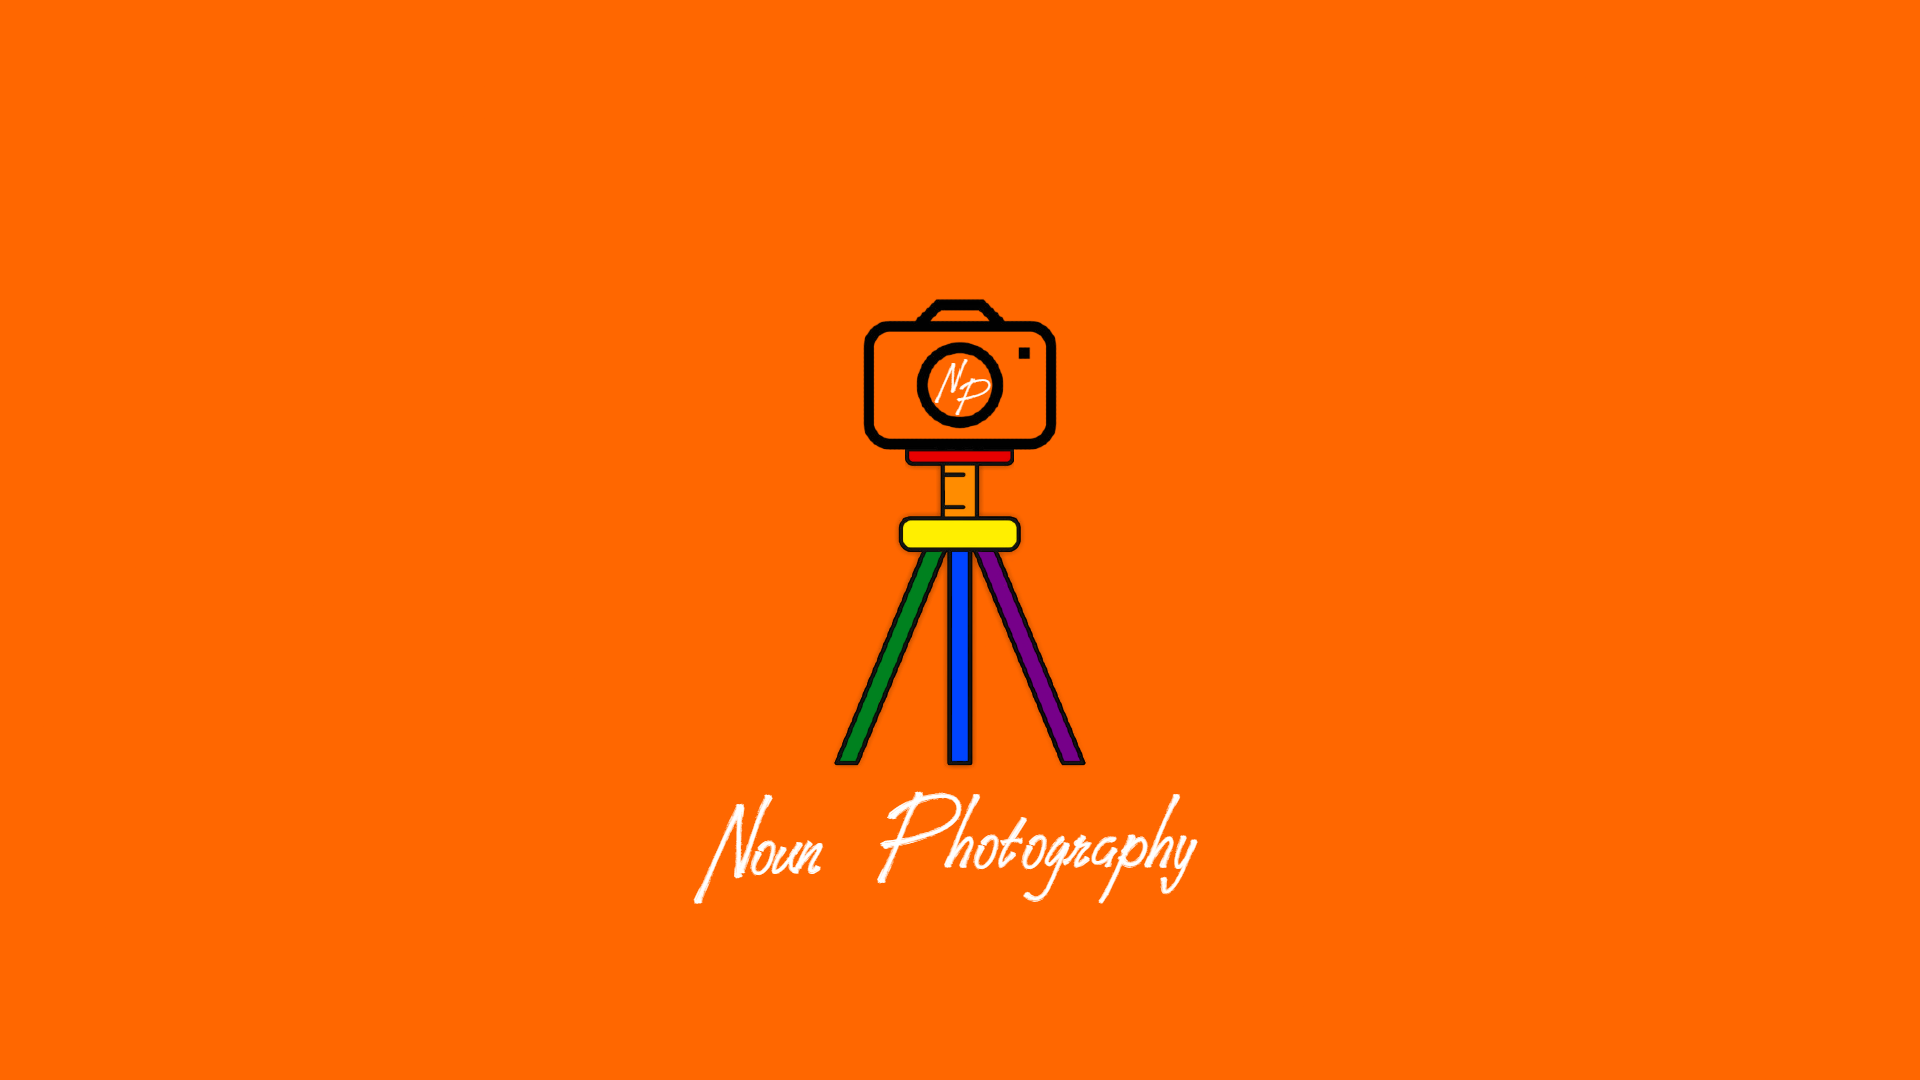 Noun Photography